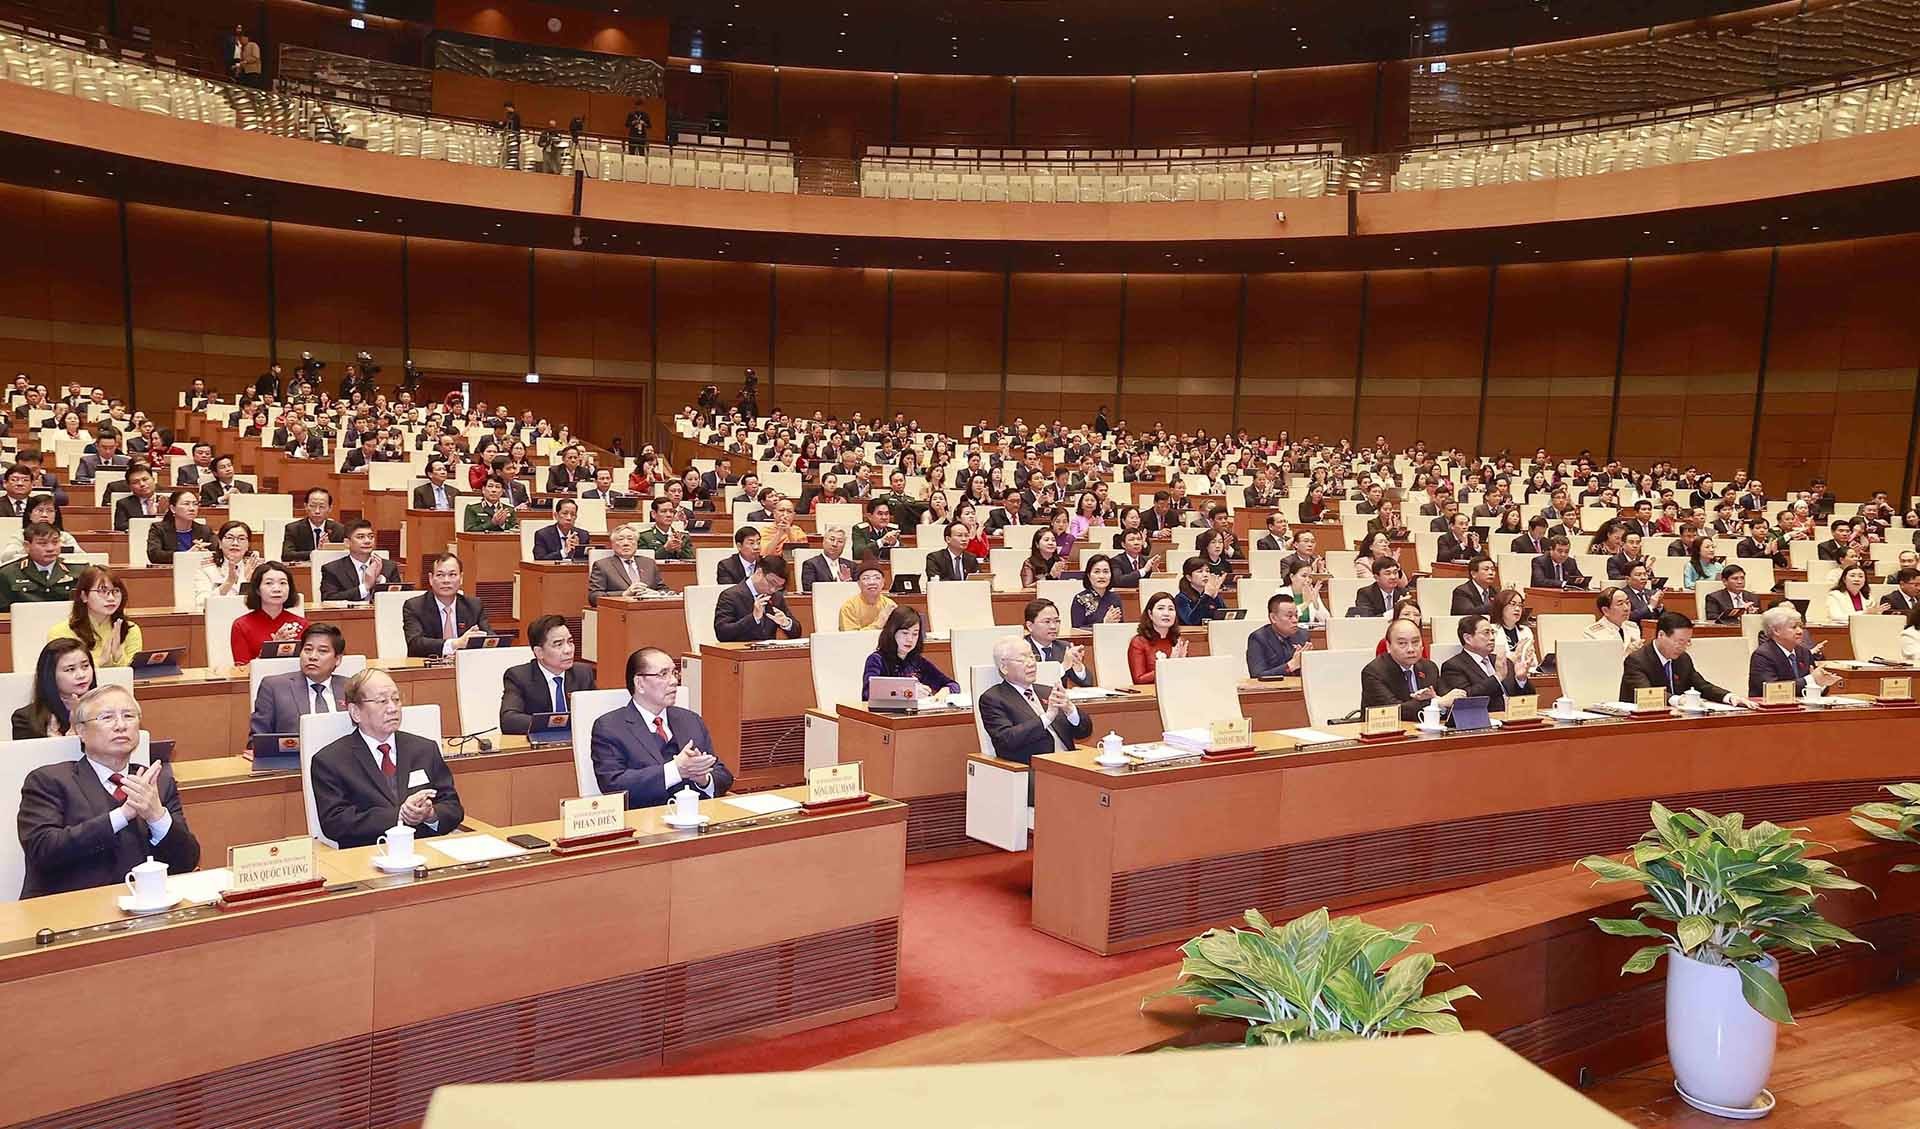 Tổng Bí thư Nguyễn Phú Trọng và các đồng chí lãnh đạo, nguyên lãnh đạo Đảng, Nhà nước và đại biểu dự khai mạc. (Nguồn: TTXVN)